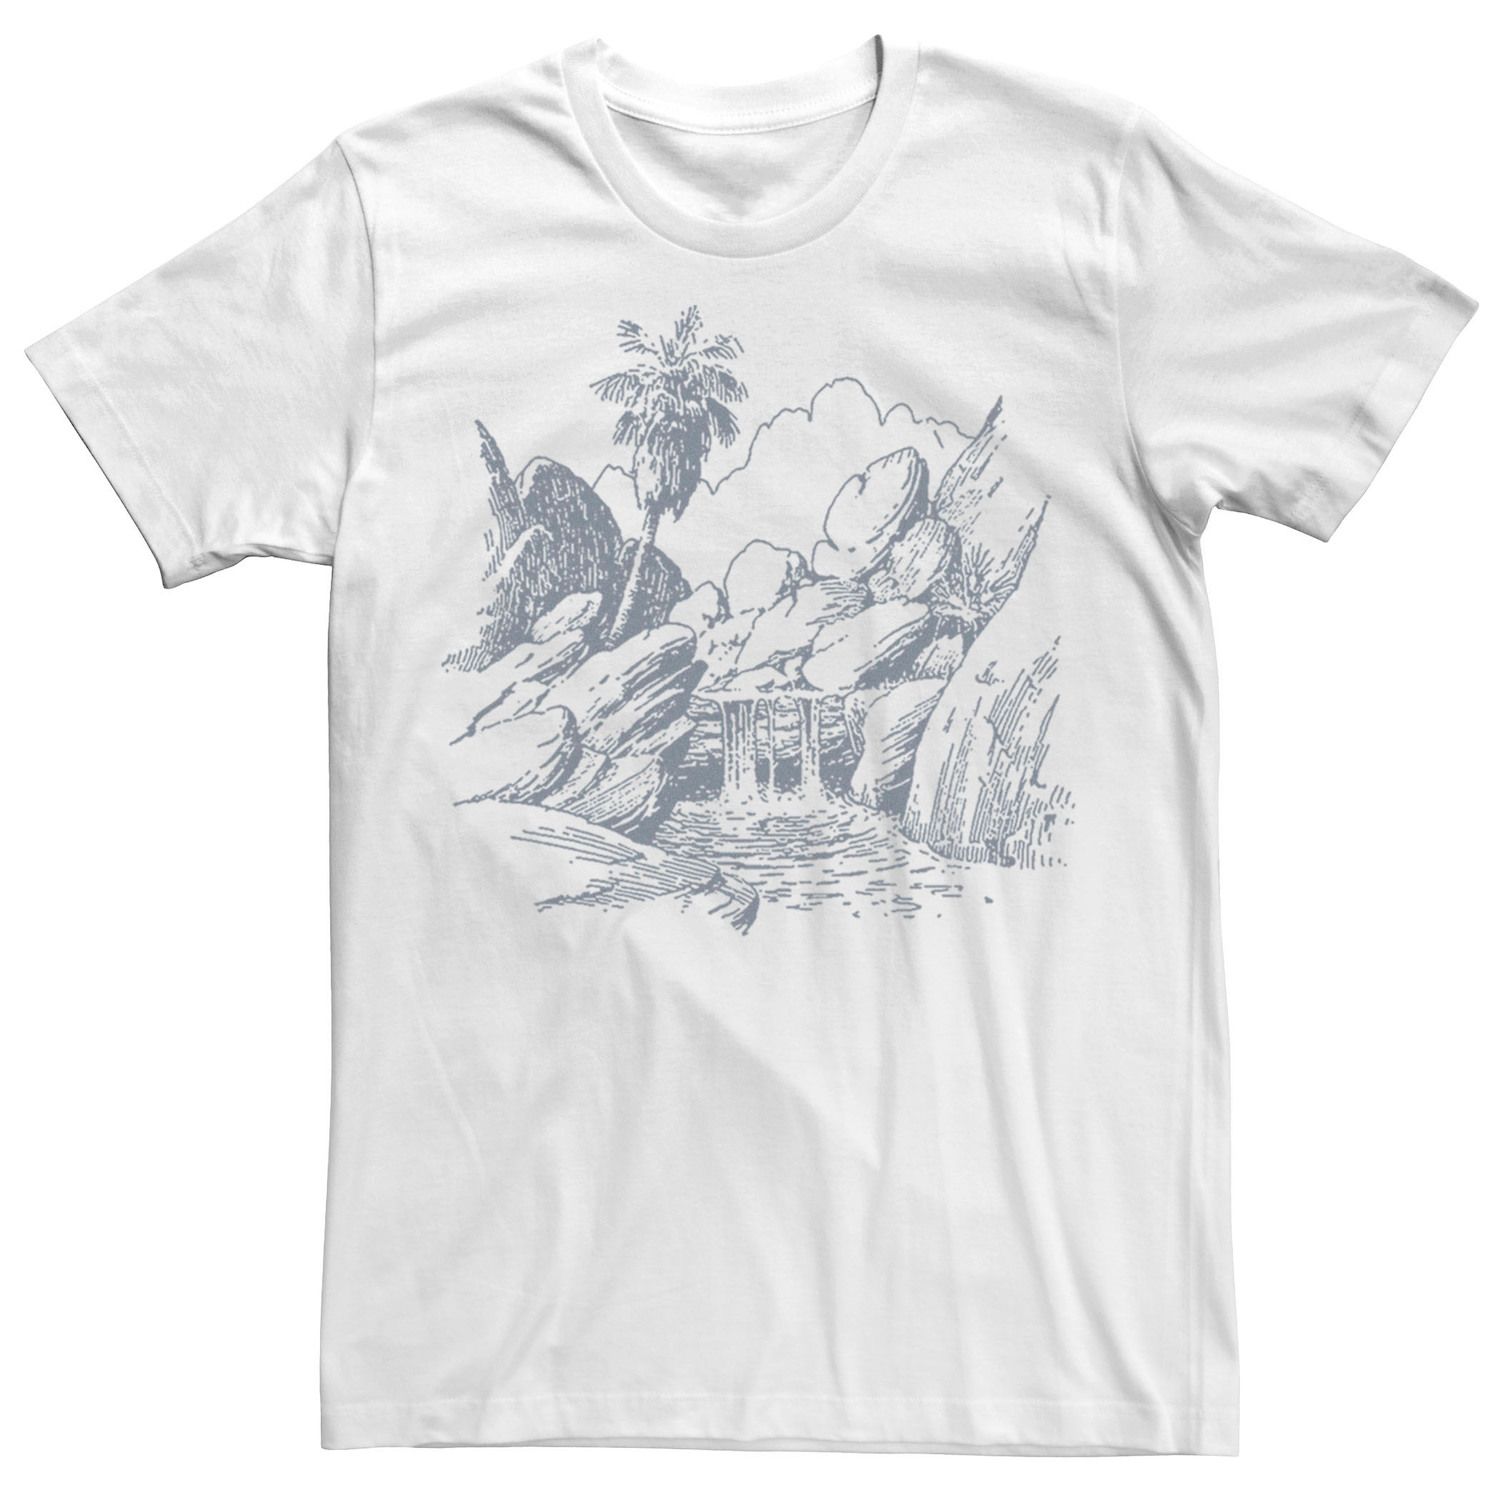 Мужская футболка с водопадом и природой Generic обои на заказ с водопадом и водопадом из пвх